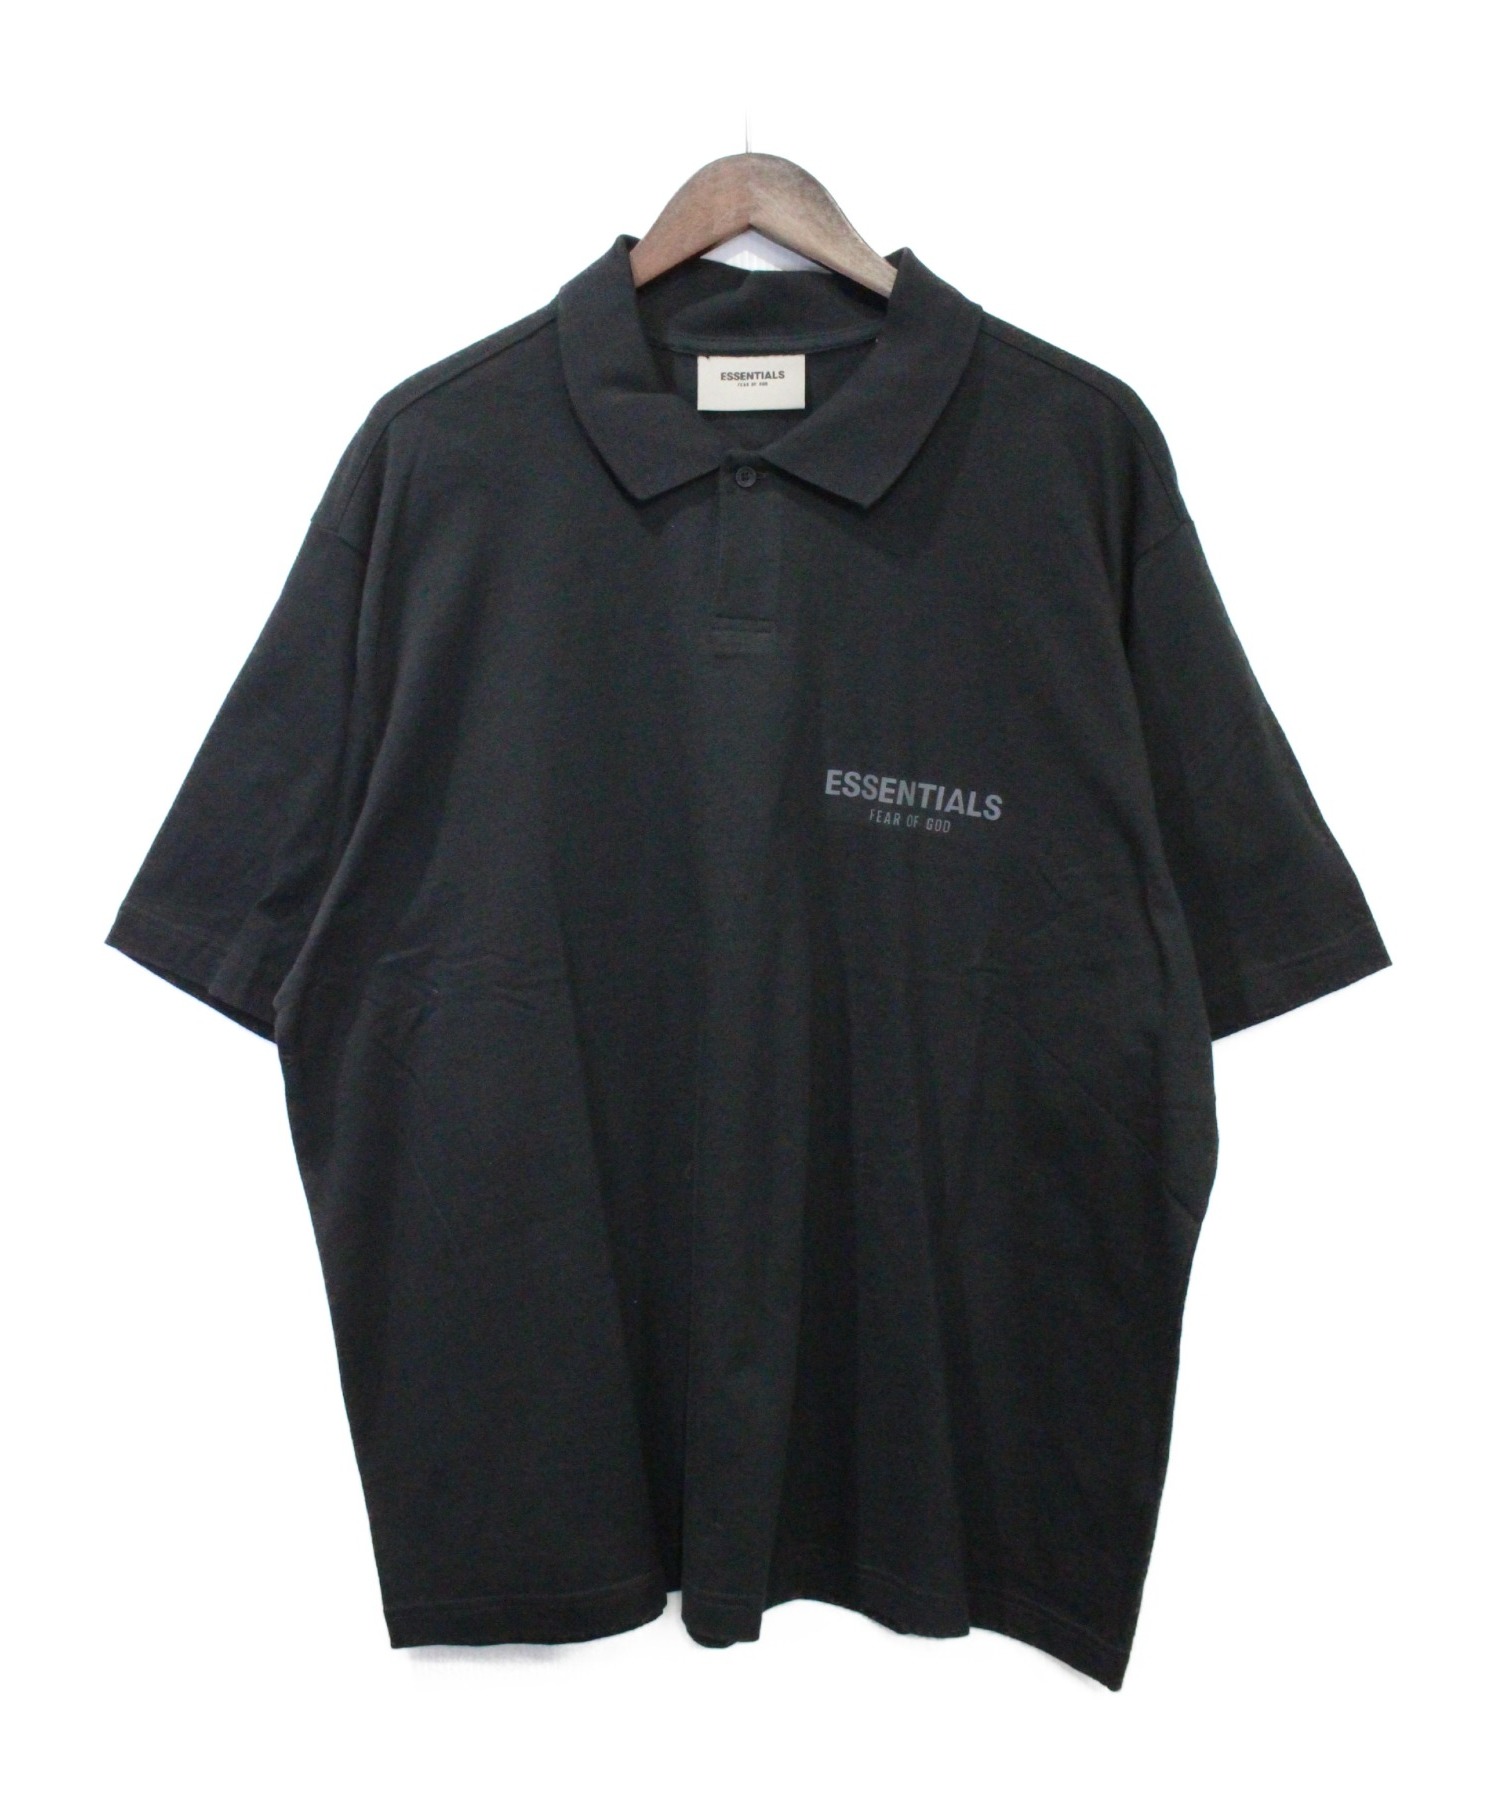 FOG essentials ブラックポロシャツユニセックス - ポロシャツ